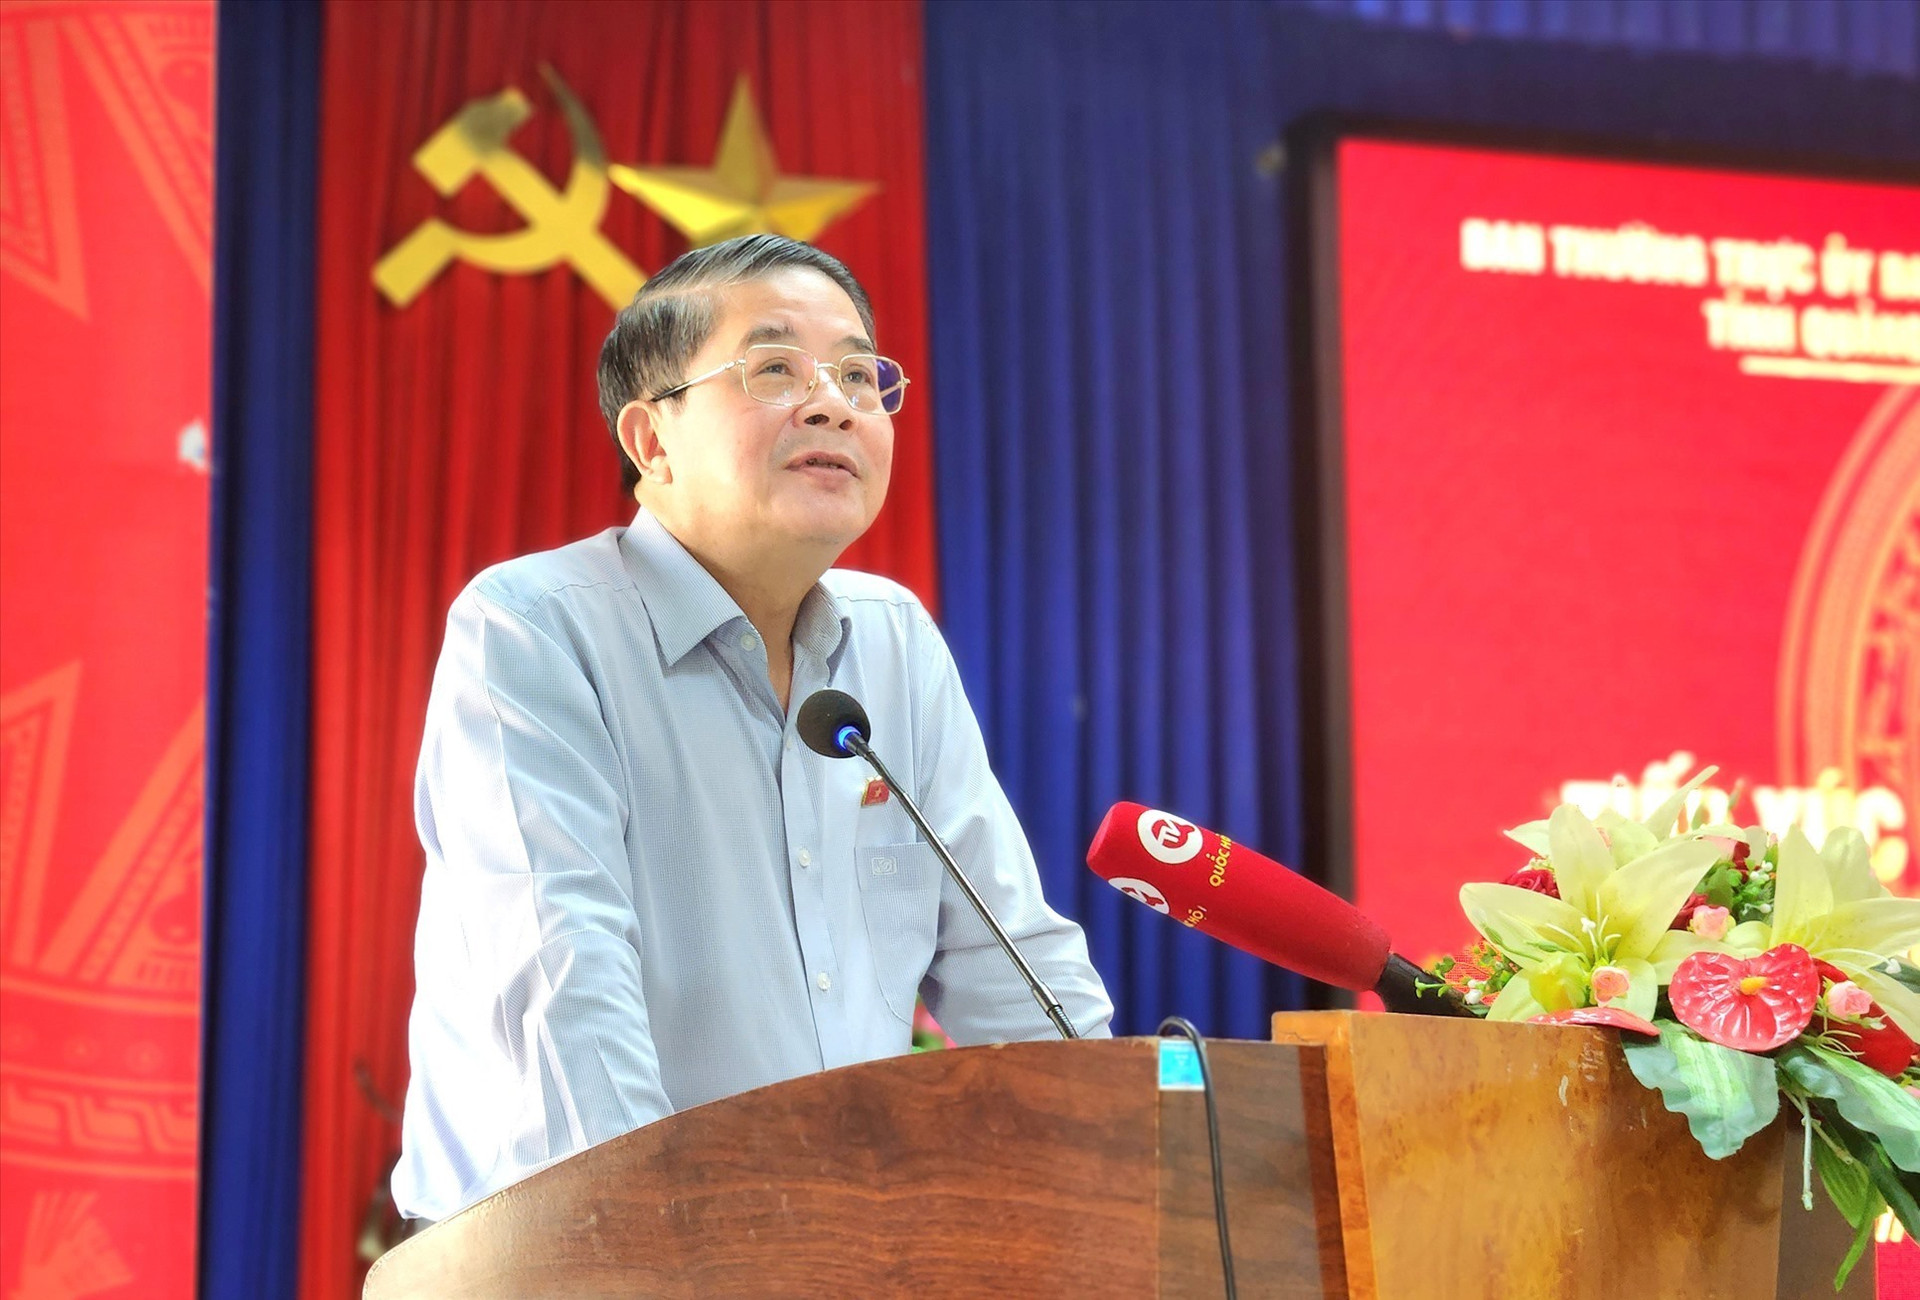 Phó Chủ tịch Quốc hội Nguyễn Đức Hải phát biểu tại buổi tiếp xúc. Ảnh: Q.T